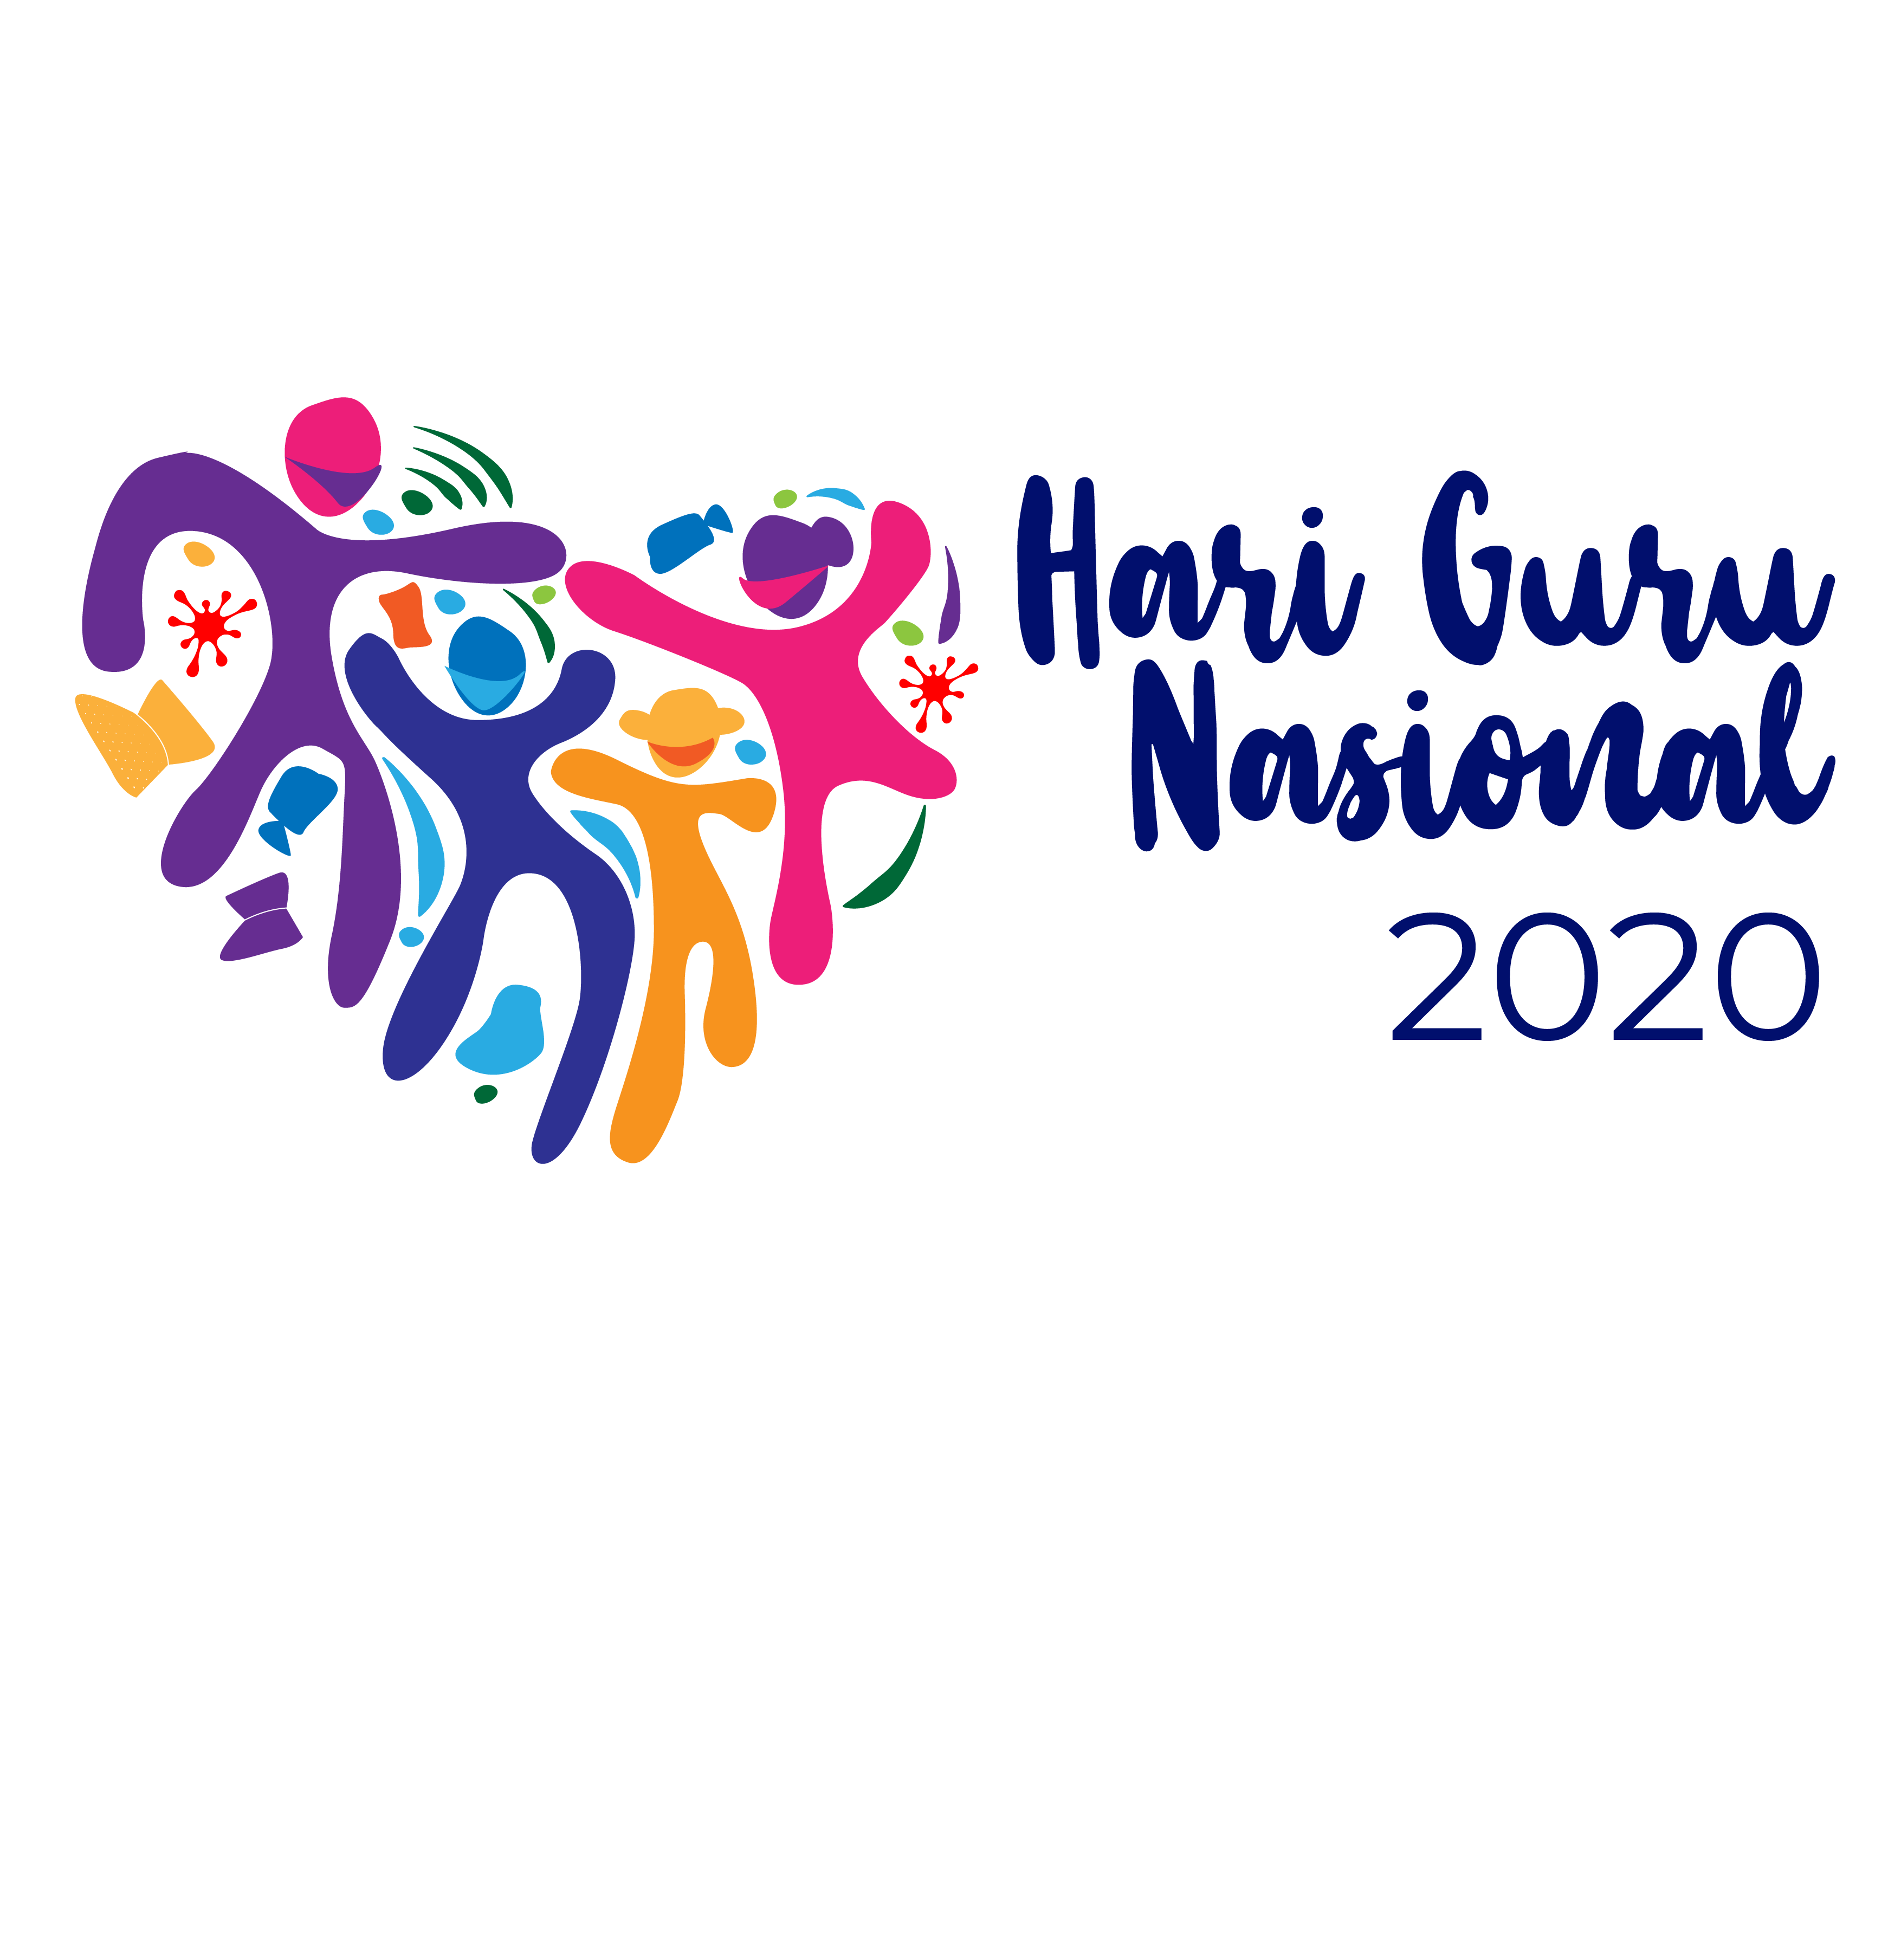 Gambar Hari Guru Nasional Lengkap Dengan Link Download Logo Hari Guru Nasional 2020 Portal Kudus